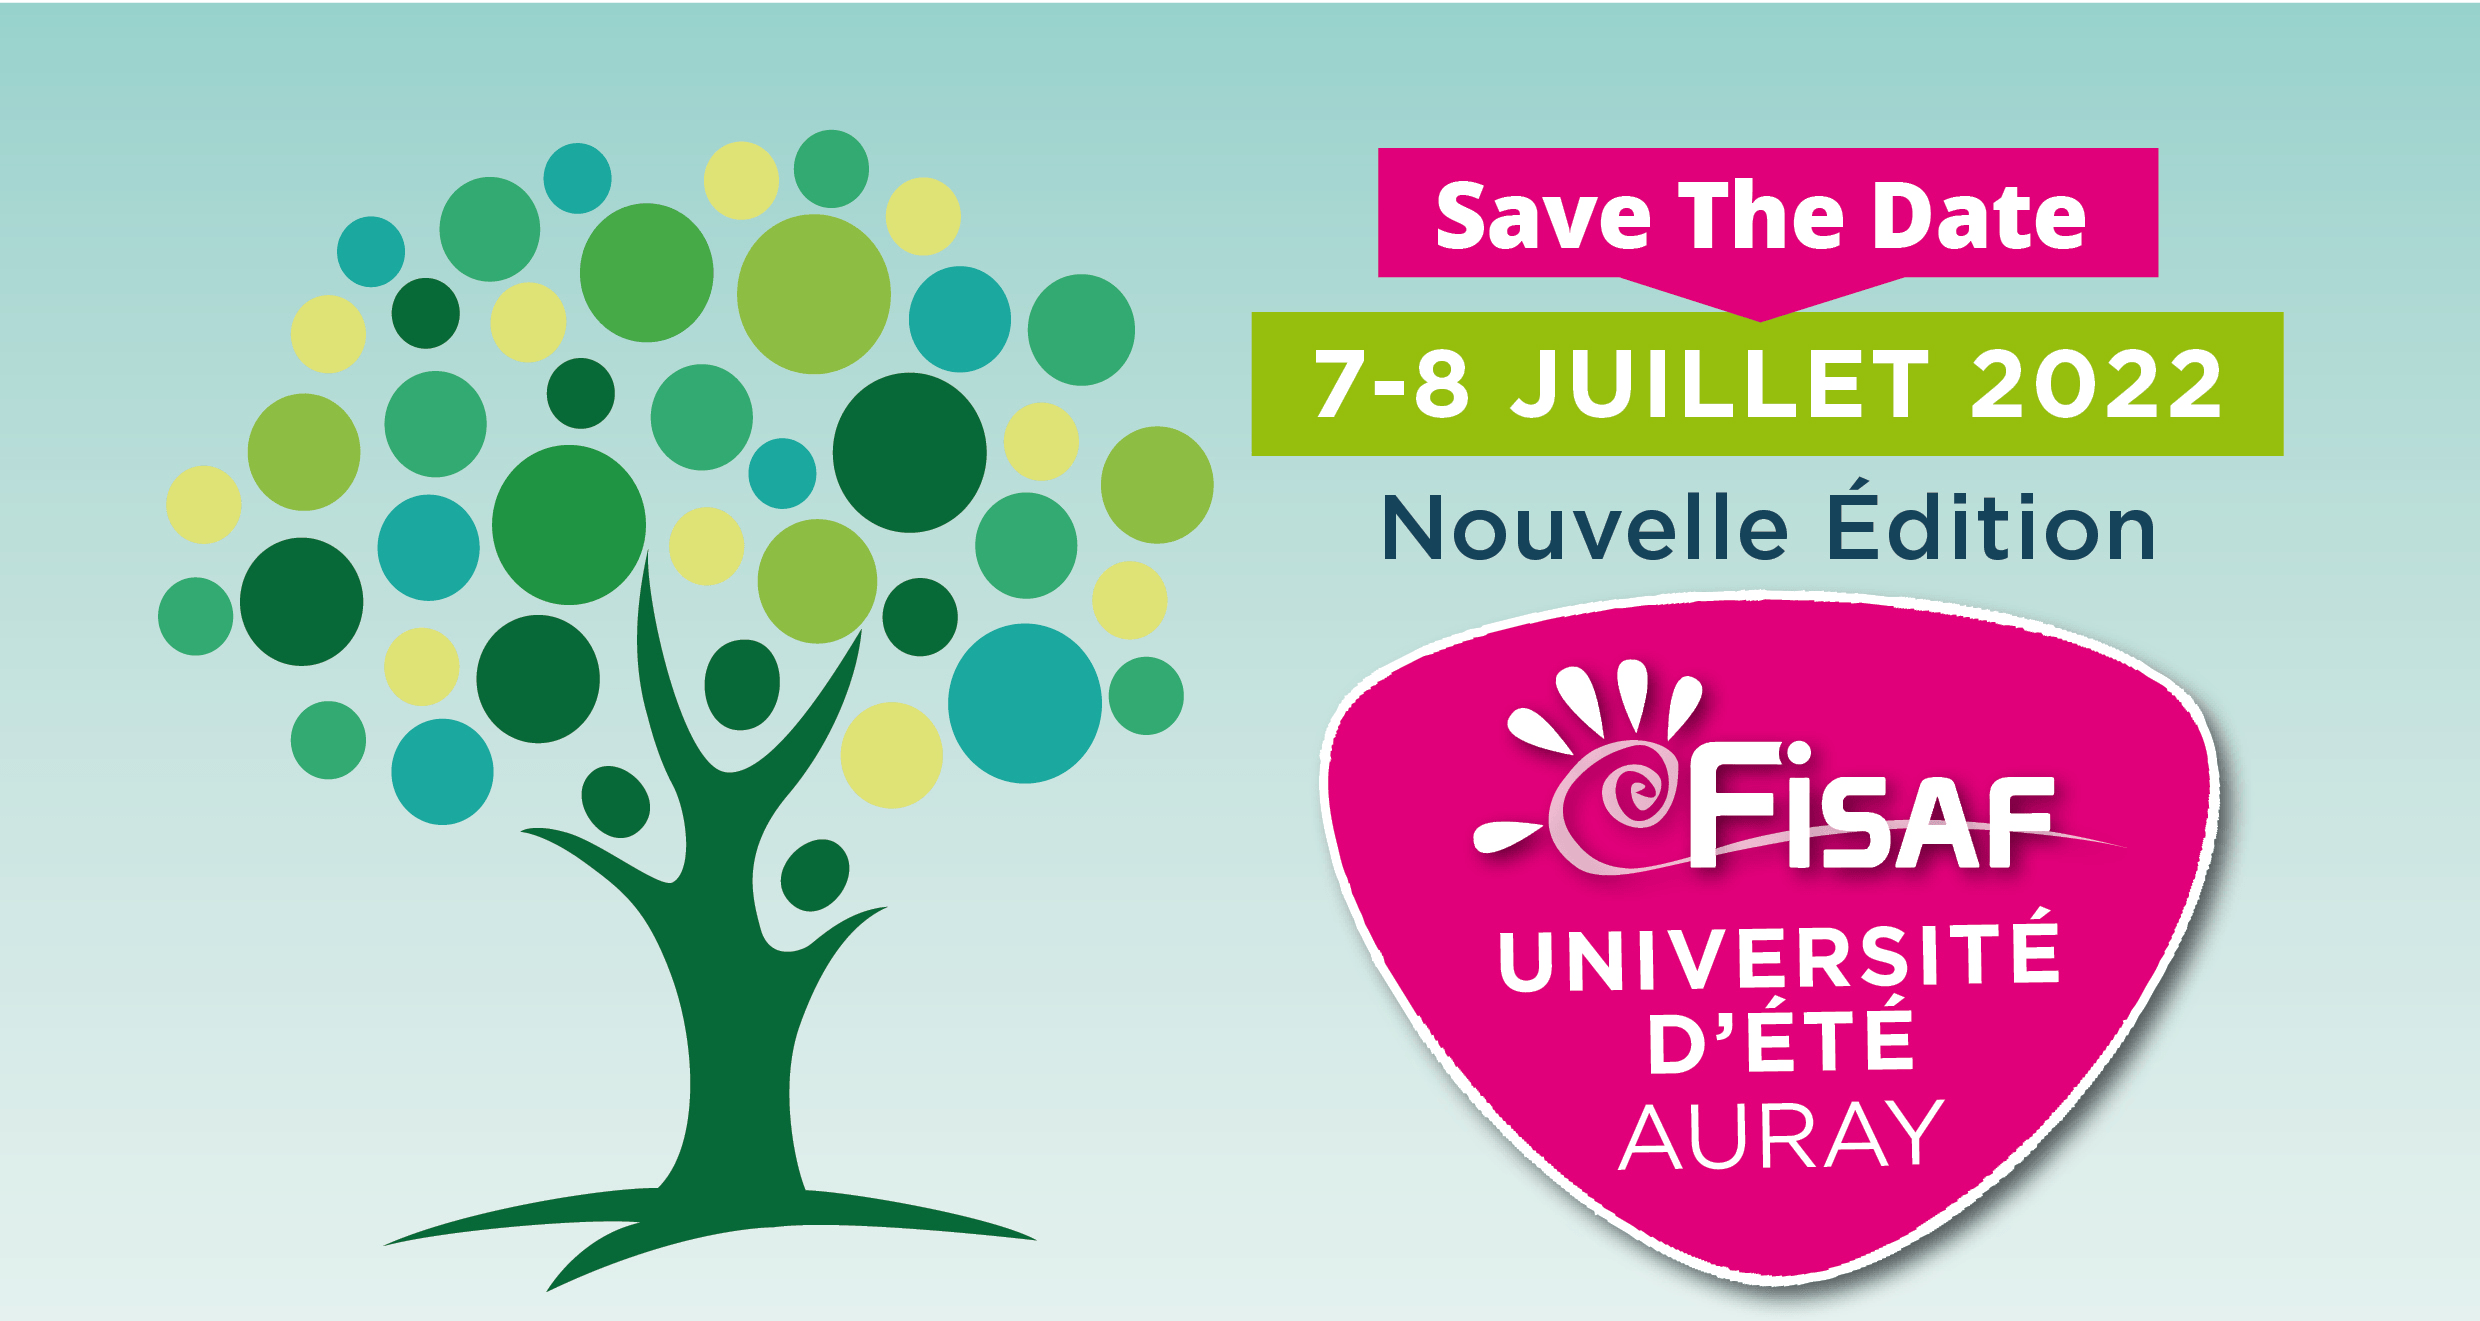 fisaf Université d'été Auray 2022